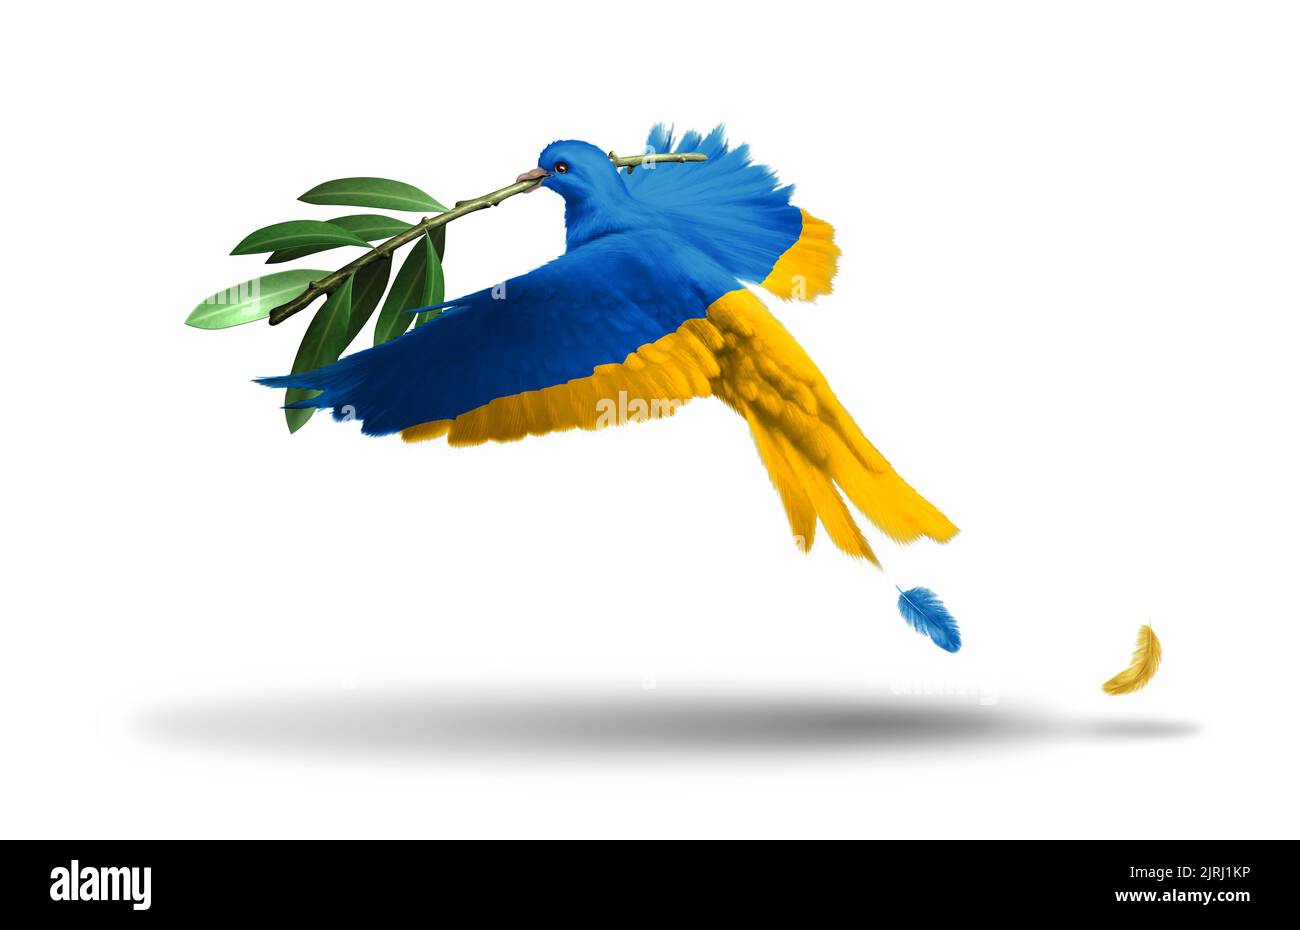 Símbolo de la libertad de Ucrania y Ucrania la paz como asociación europea con una paloma en los colores de la bandera que sostiene una rama de olivo que expresa. Foto de stock